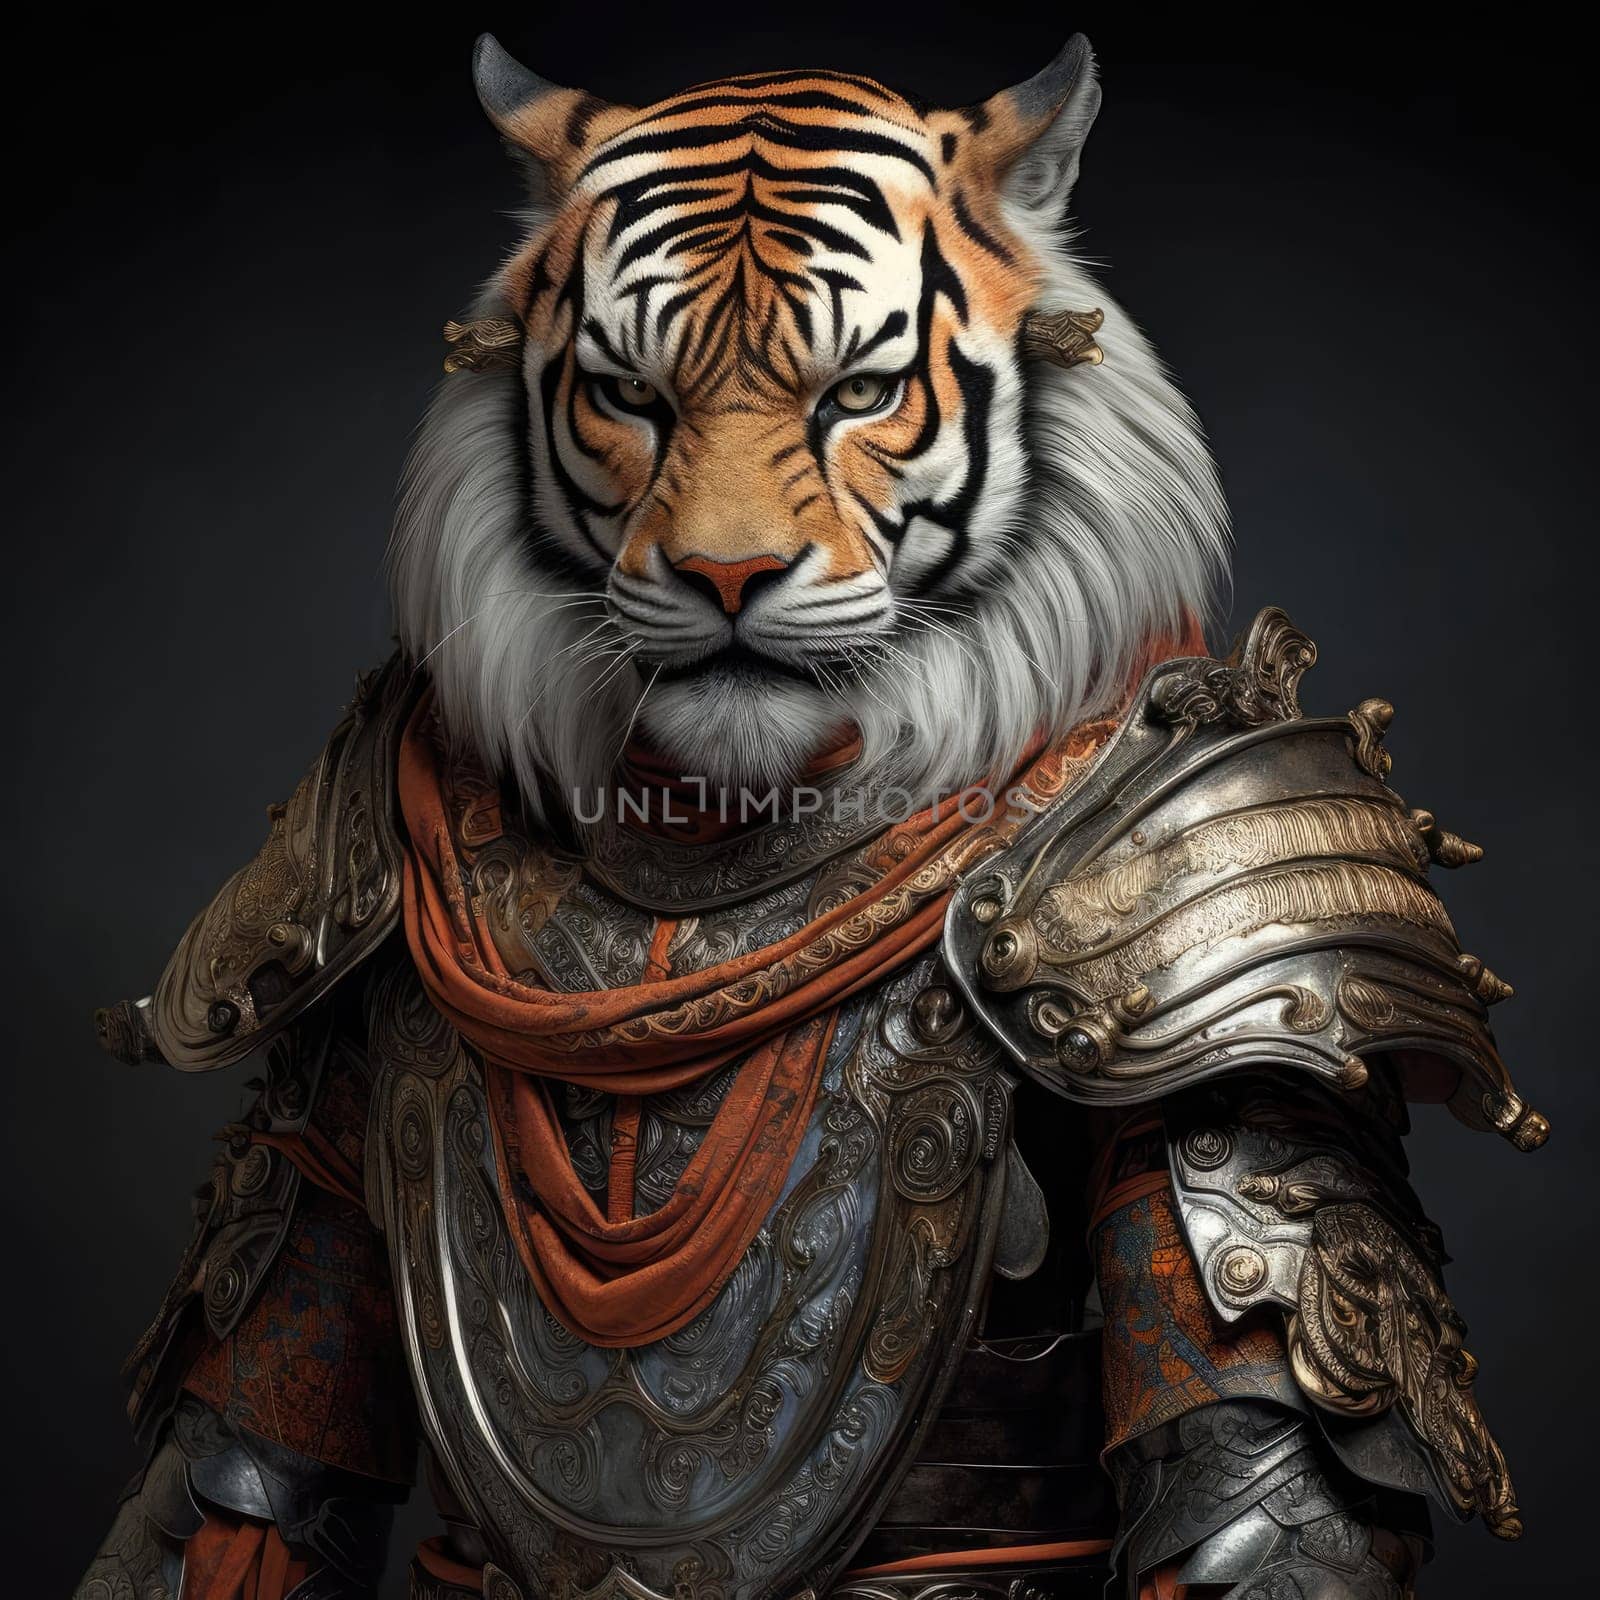 Tiger in samurai armor by cherezoff